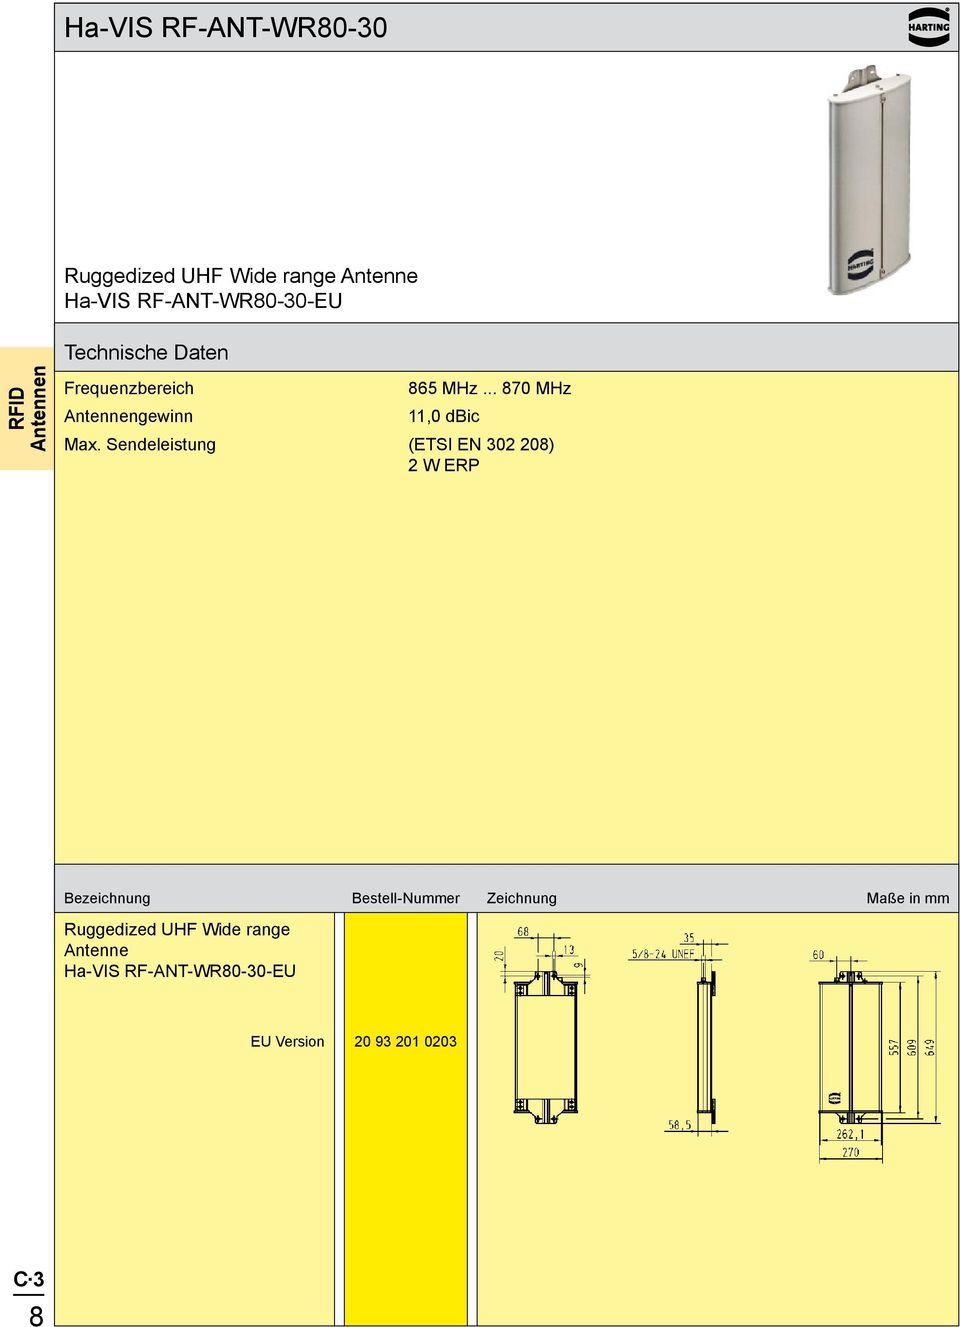 Sendeleistung (ETSI EN 302 208) 2 W ERP Bezeichnung Bestell-Nummer Zeichnung Maße